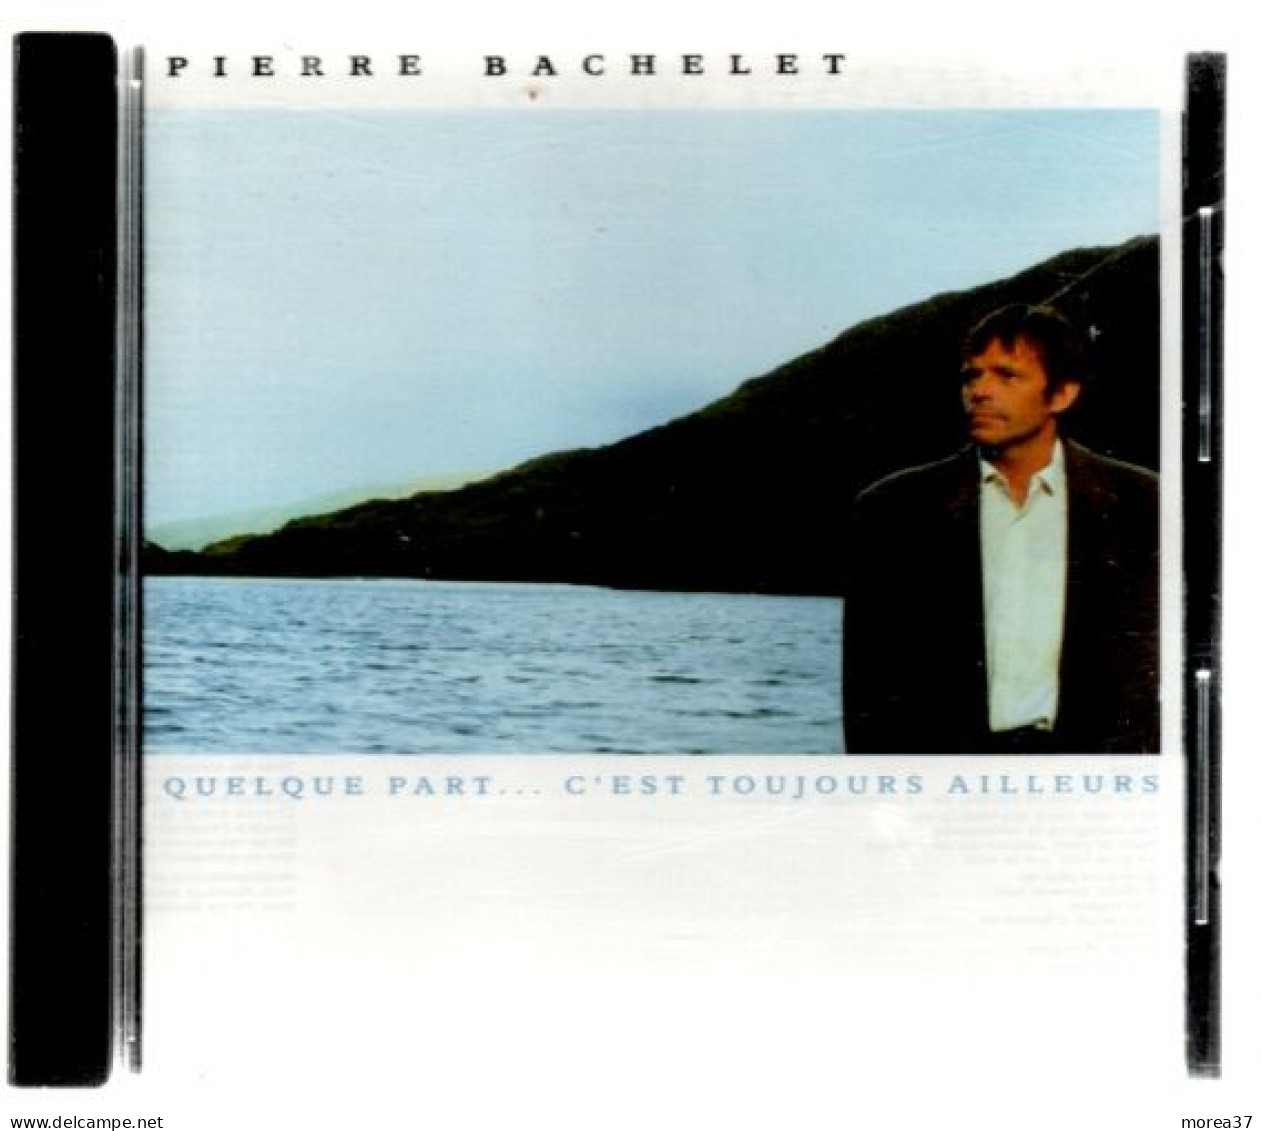 PIERRE BACHELET   Quelque Part  C'est Toujours Ailleurs    (CD 03) - Other - French Music